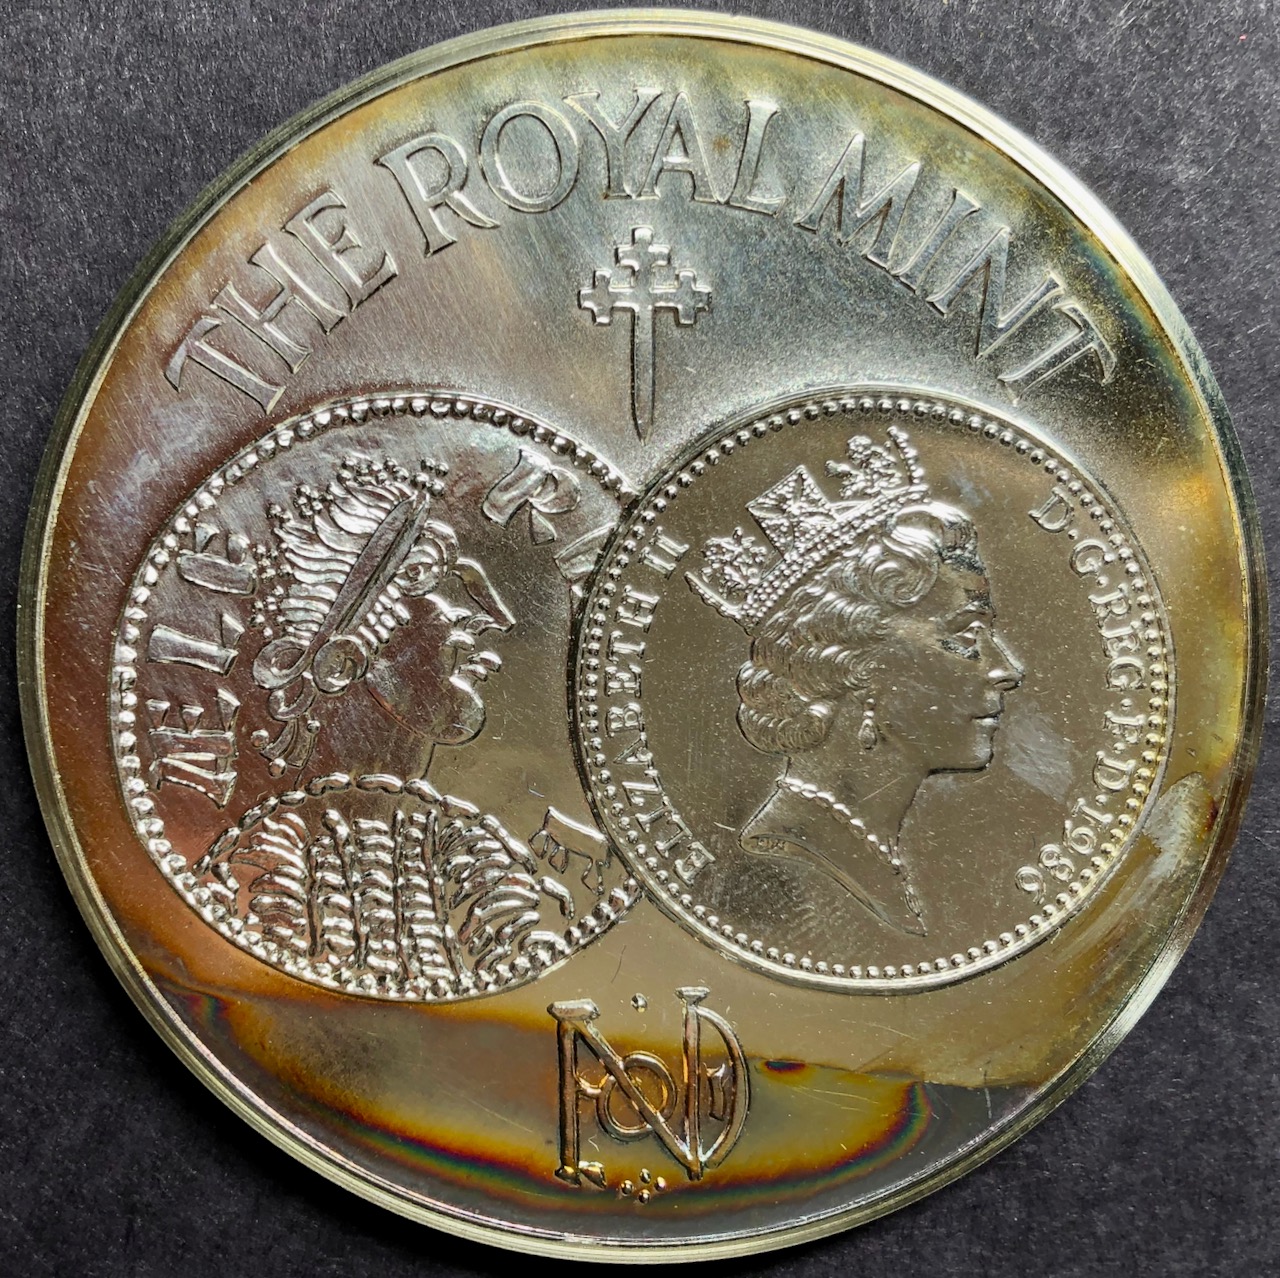 イギリス 1986年ロイヤルミント設立1100年記念5オンスプルーフ シルバーメダル画像